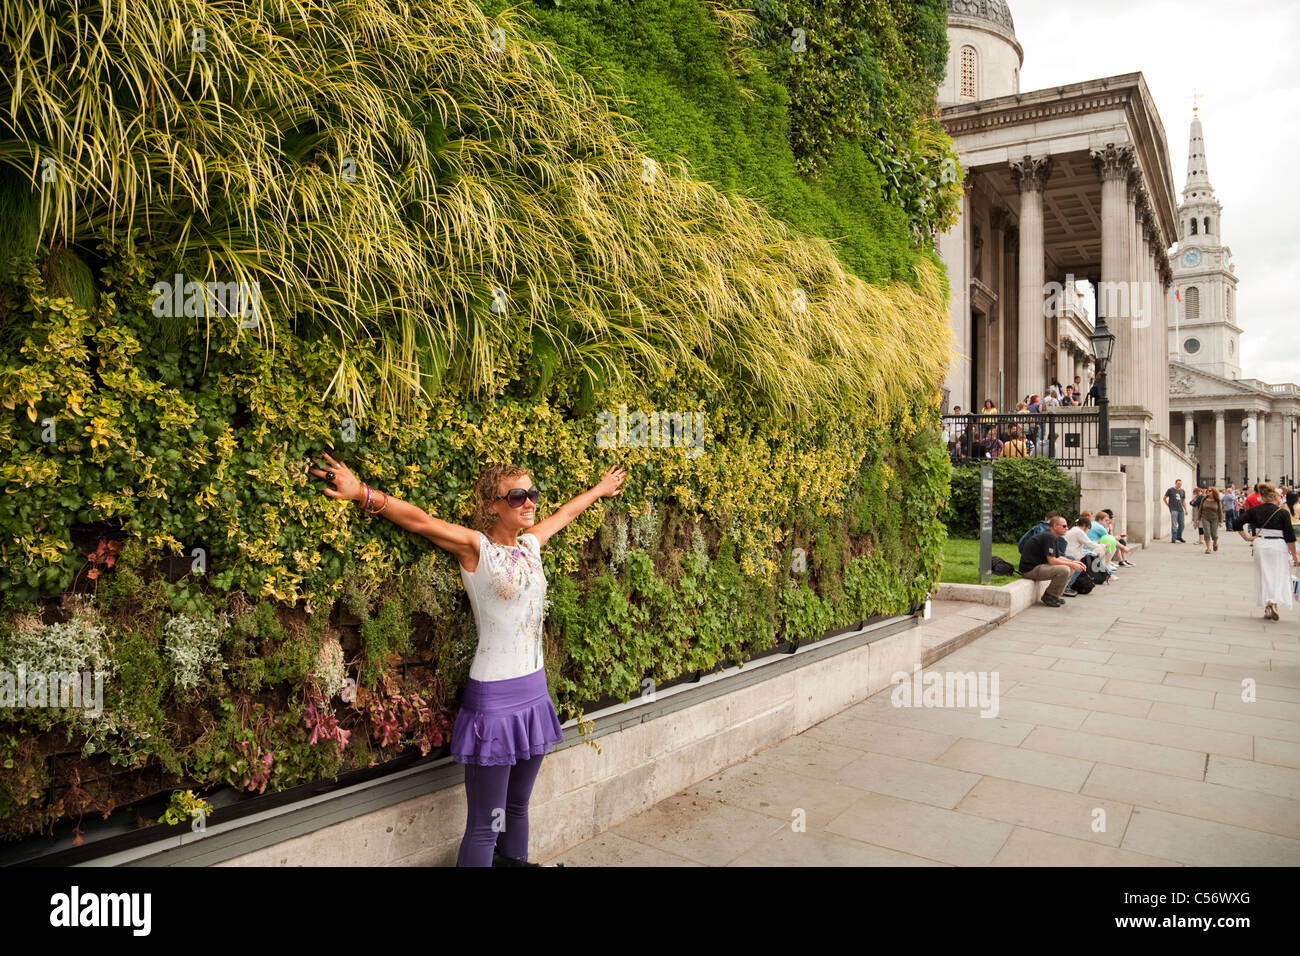 Un turista fotografiado delante de "una obra maestra de vida' - Trafalgar Square, Londres, Gran Bretaña. Foto de stock